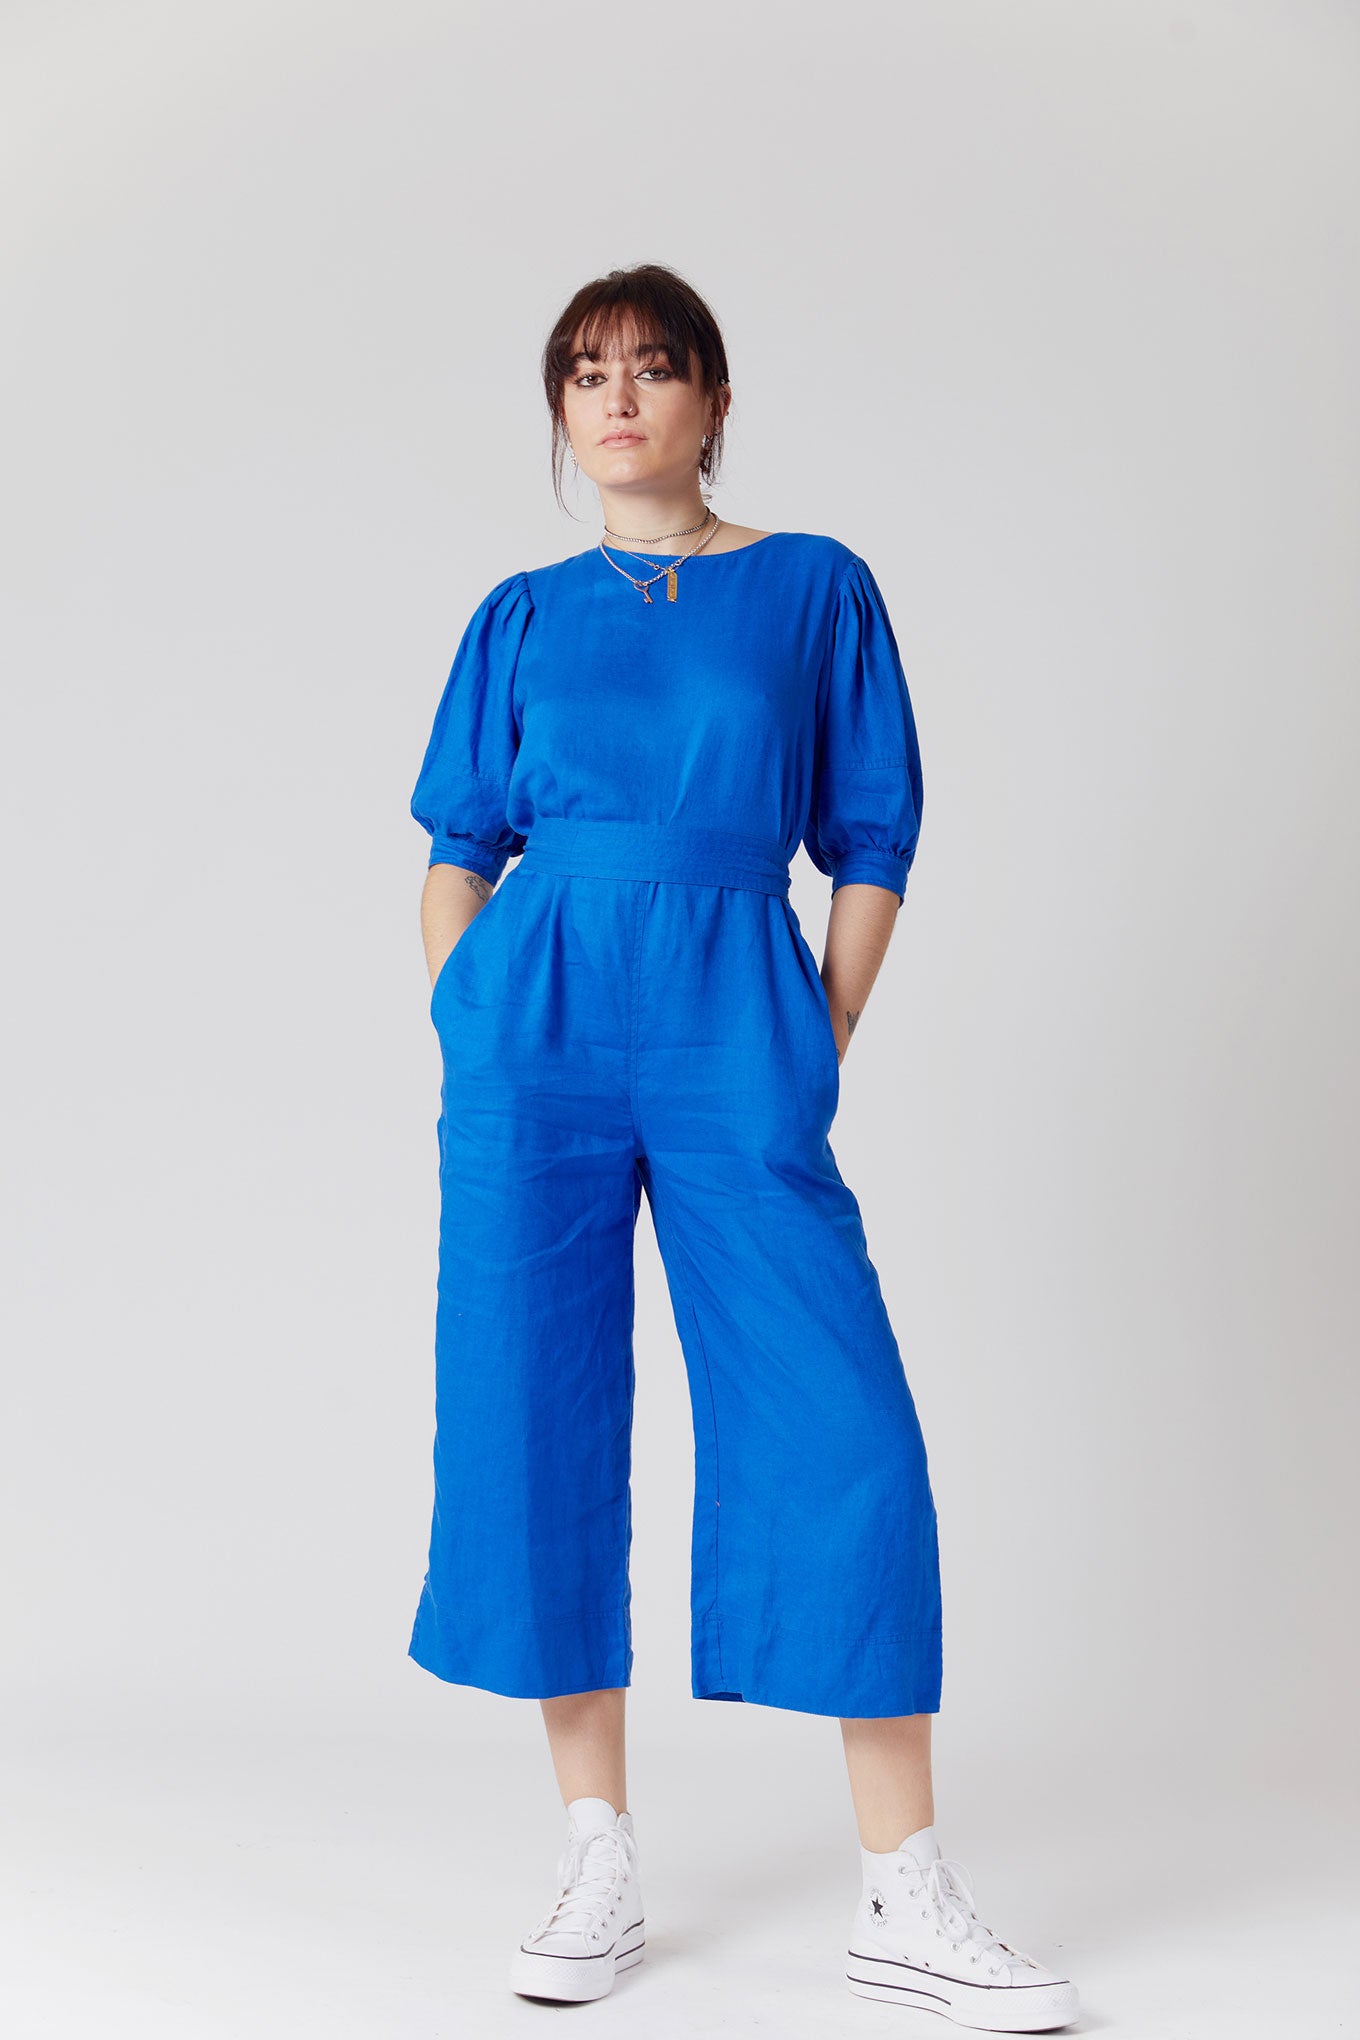 FAYE Organic Linen Jumpsuit Blue, SIZE 1 / UK 8 / EUR 36